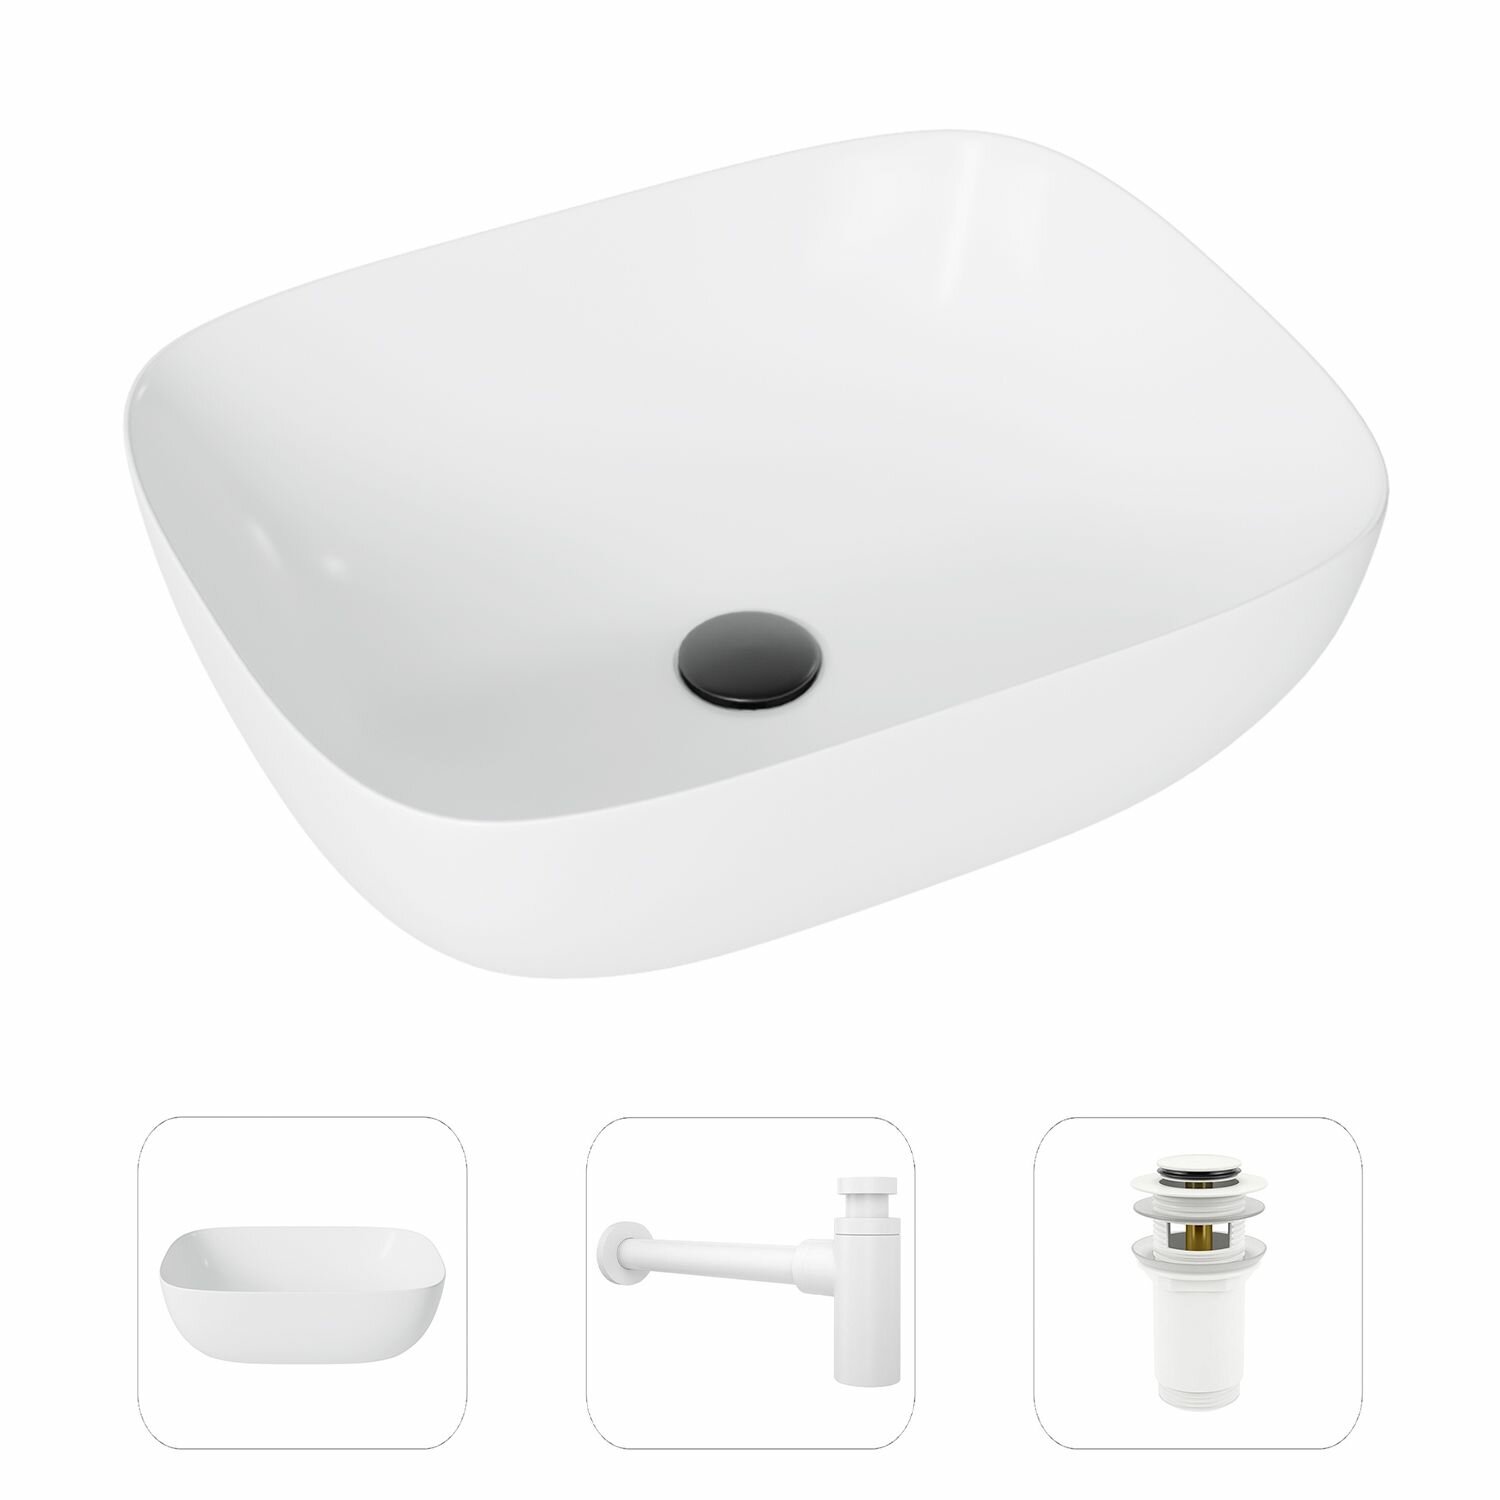 Накладная раковина в ванную Helmken 49349000 комплект 3 в 1: умывальник прямоугольный 49,5 см, сифон и донный клапан click-clack в цвете белый